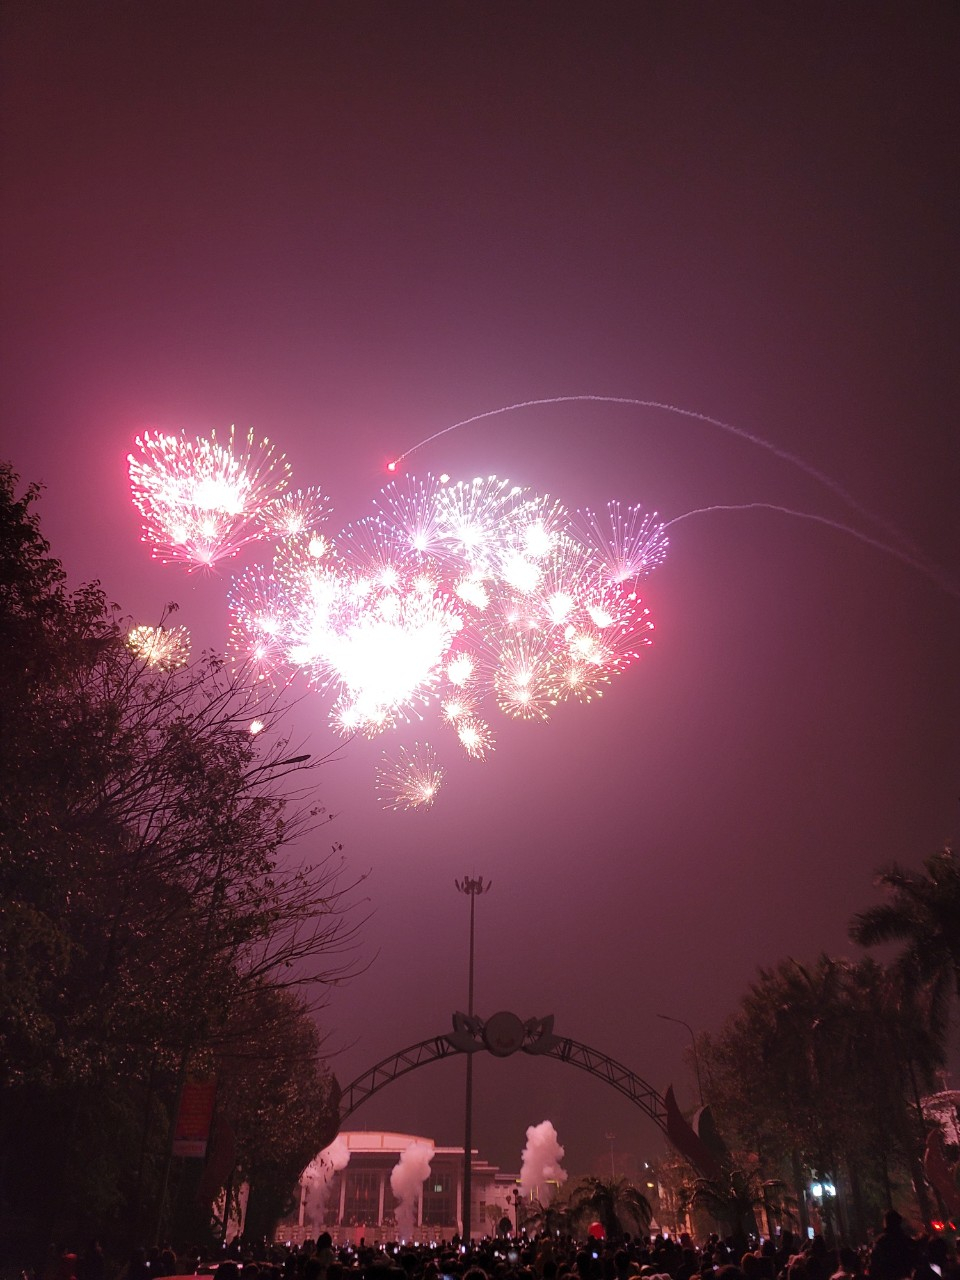 Từng chùm pháo hoa sáng rực trời đêm trên Quảng trường Nguyễn Văn Linh (thành phố Hưng Yên) trong tiếng hò reo hân hoan của người dân, mang theo hy vọng trong thời khắc năm mới